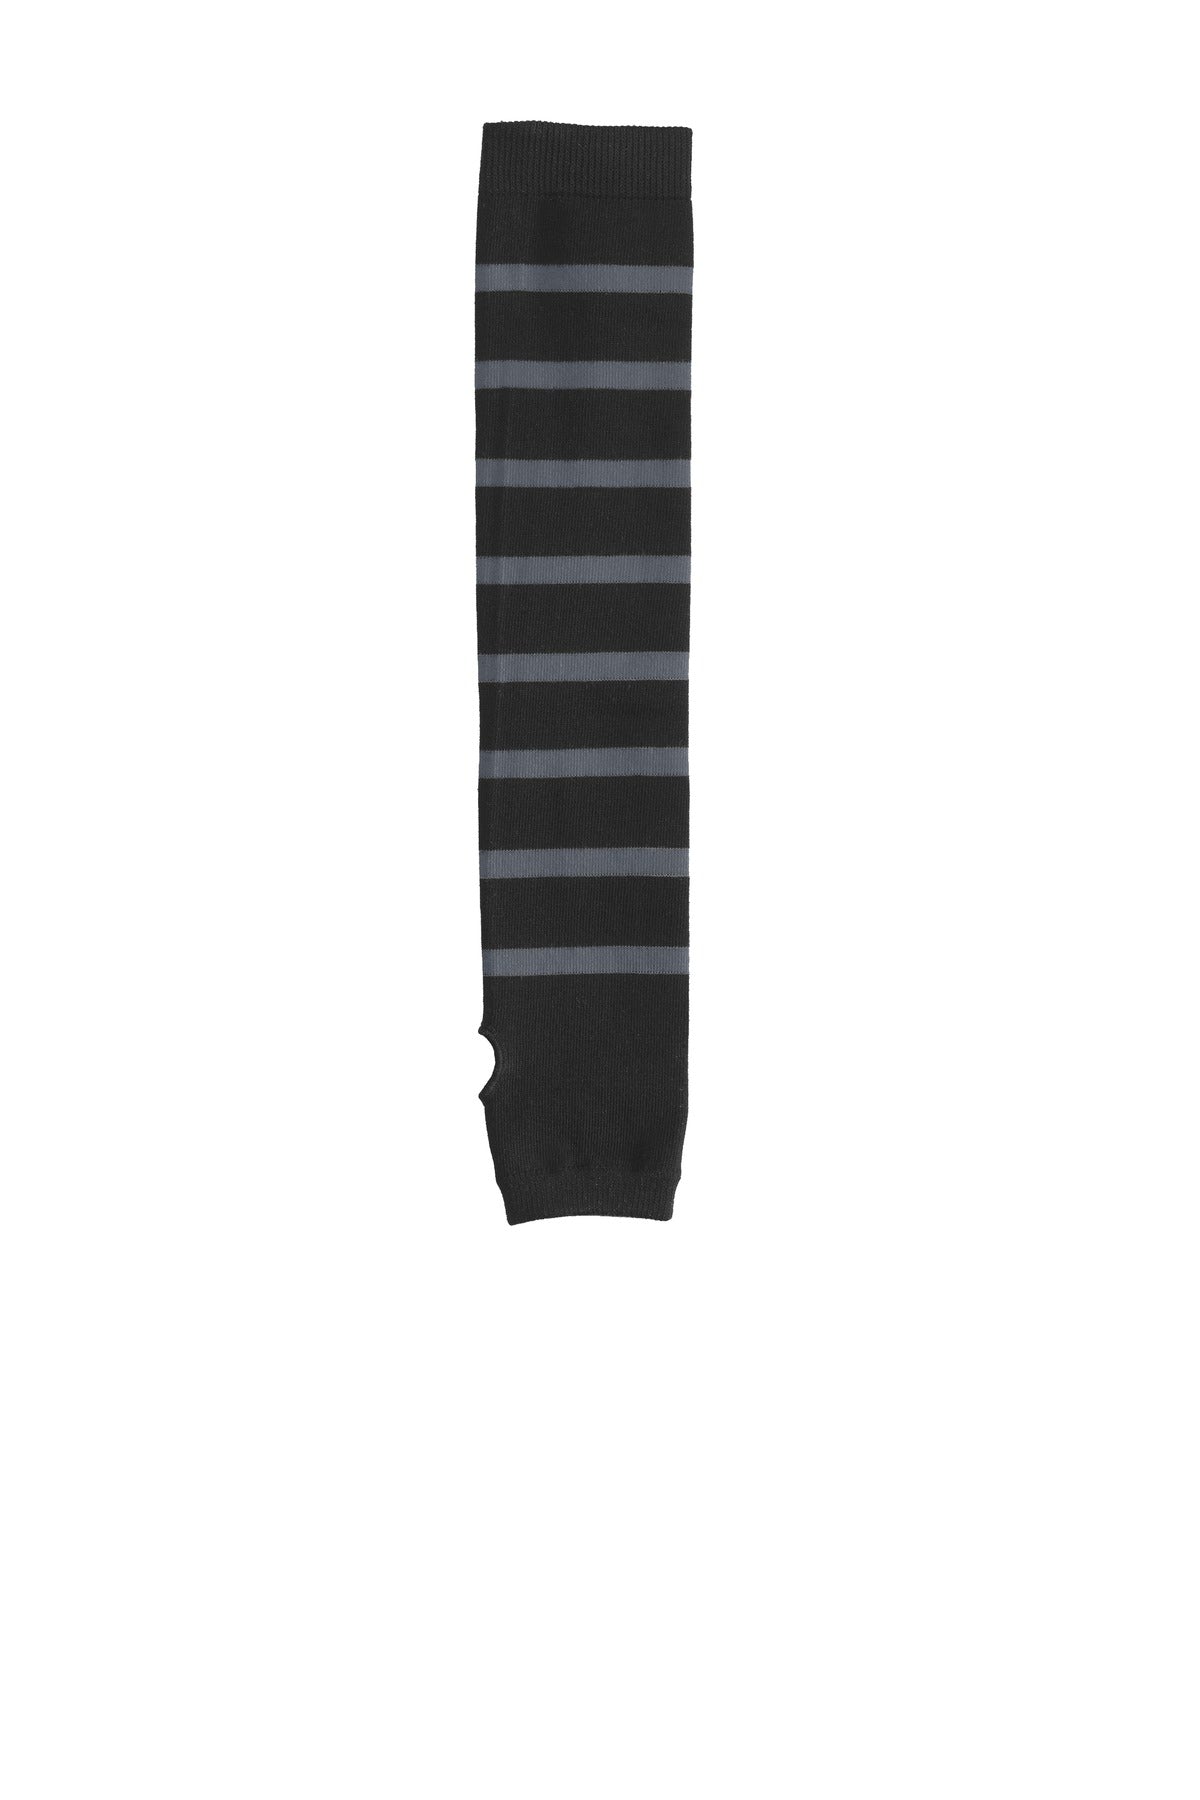 DISCONTINUED Sport-Tek ® Striped Arm Socks. STA03